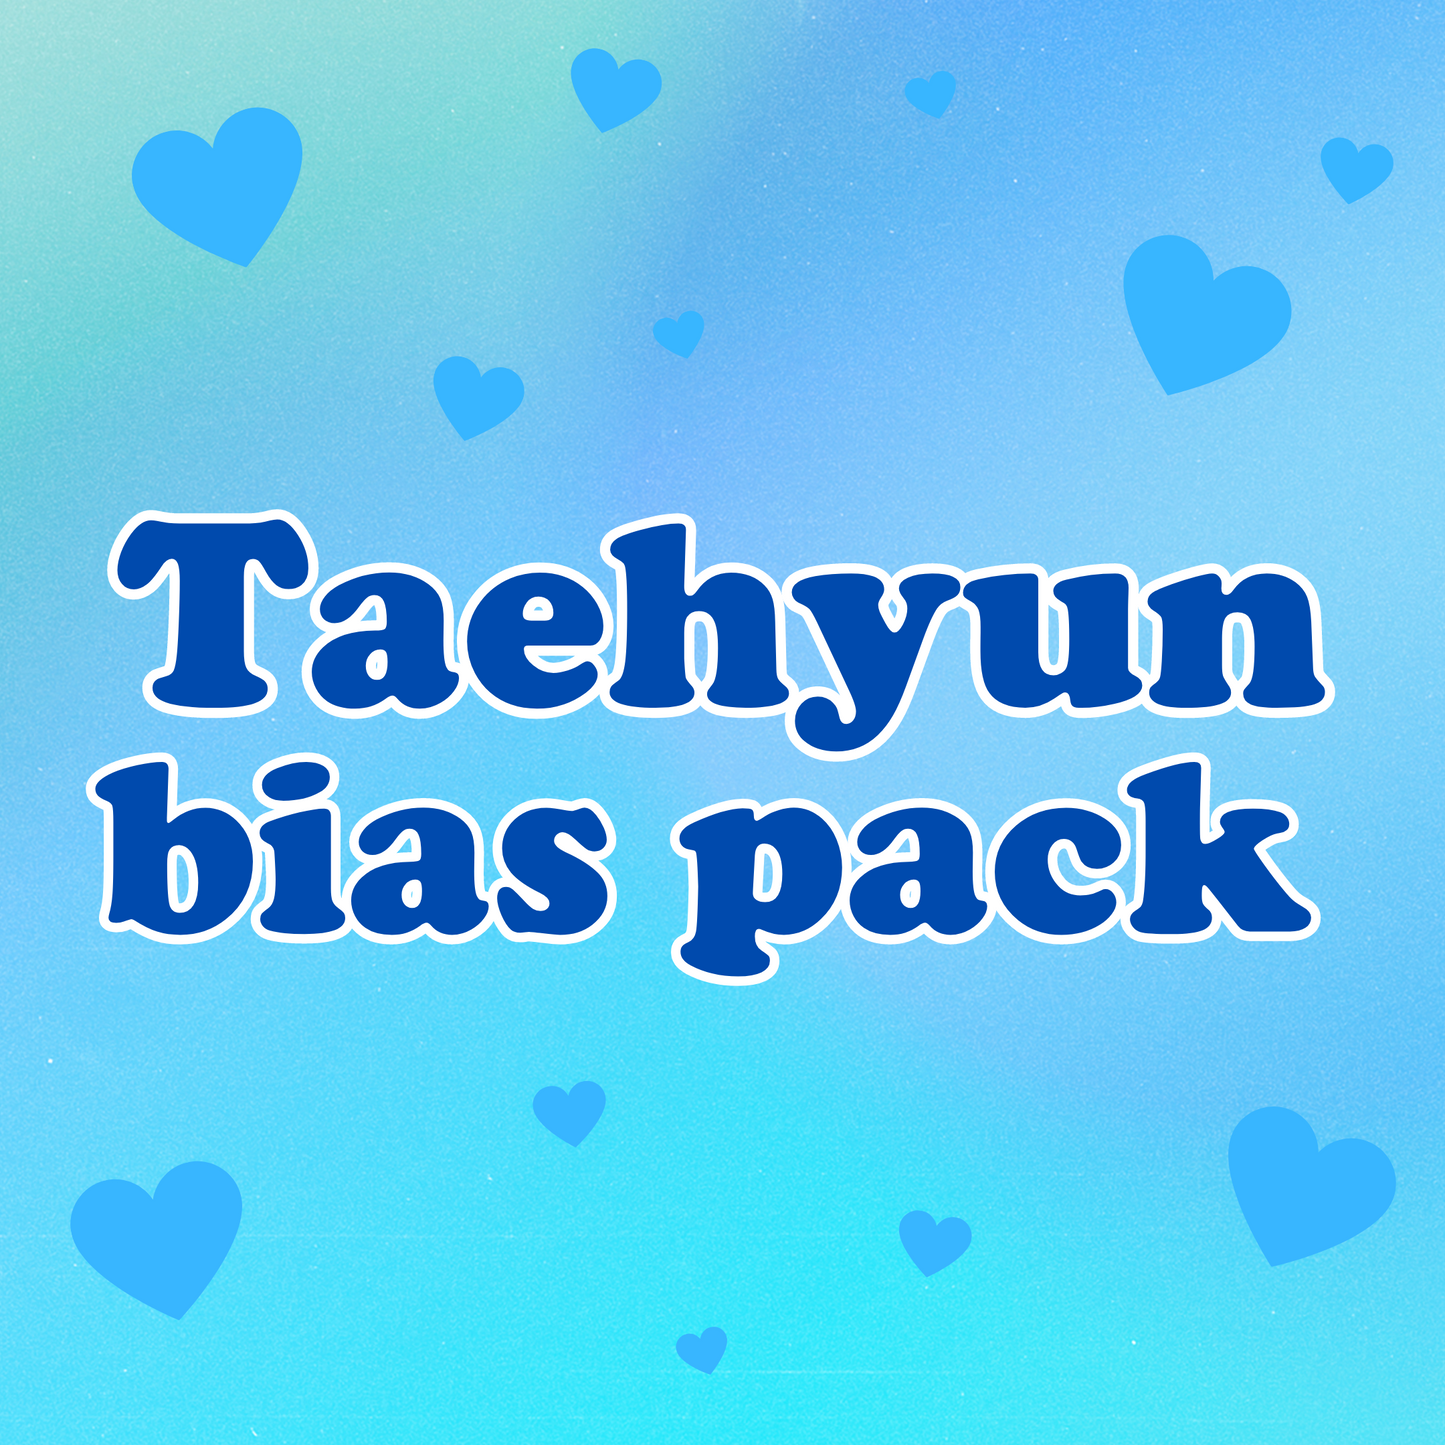 Taehyun bias pack